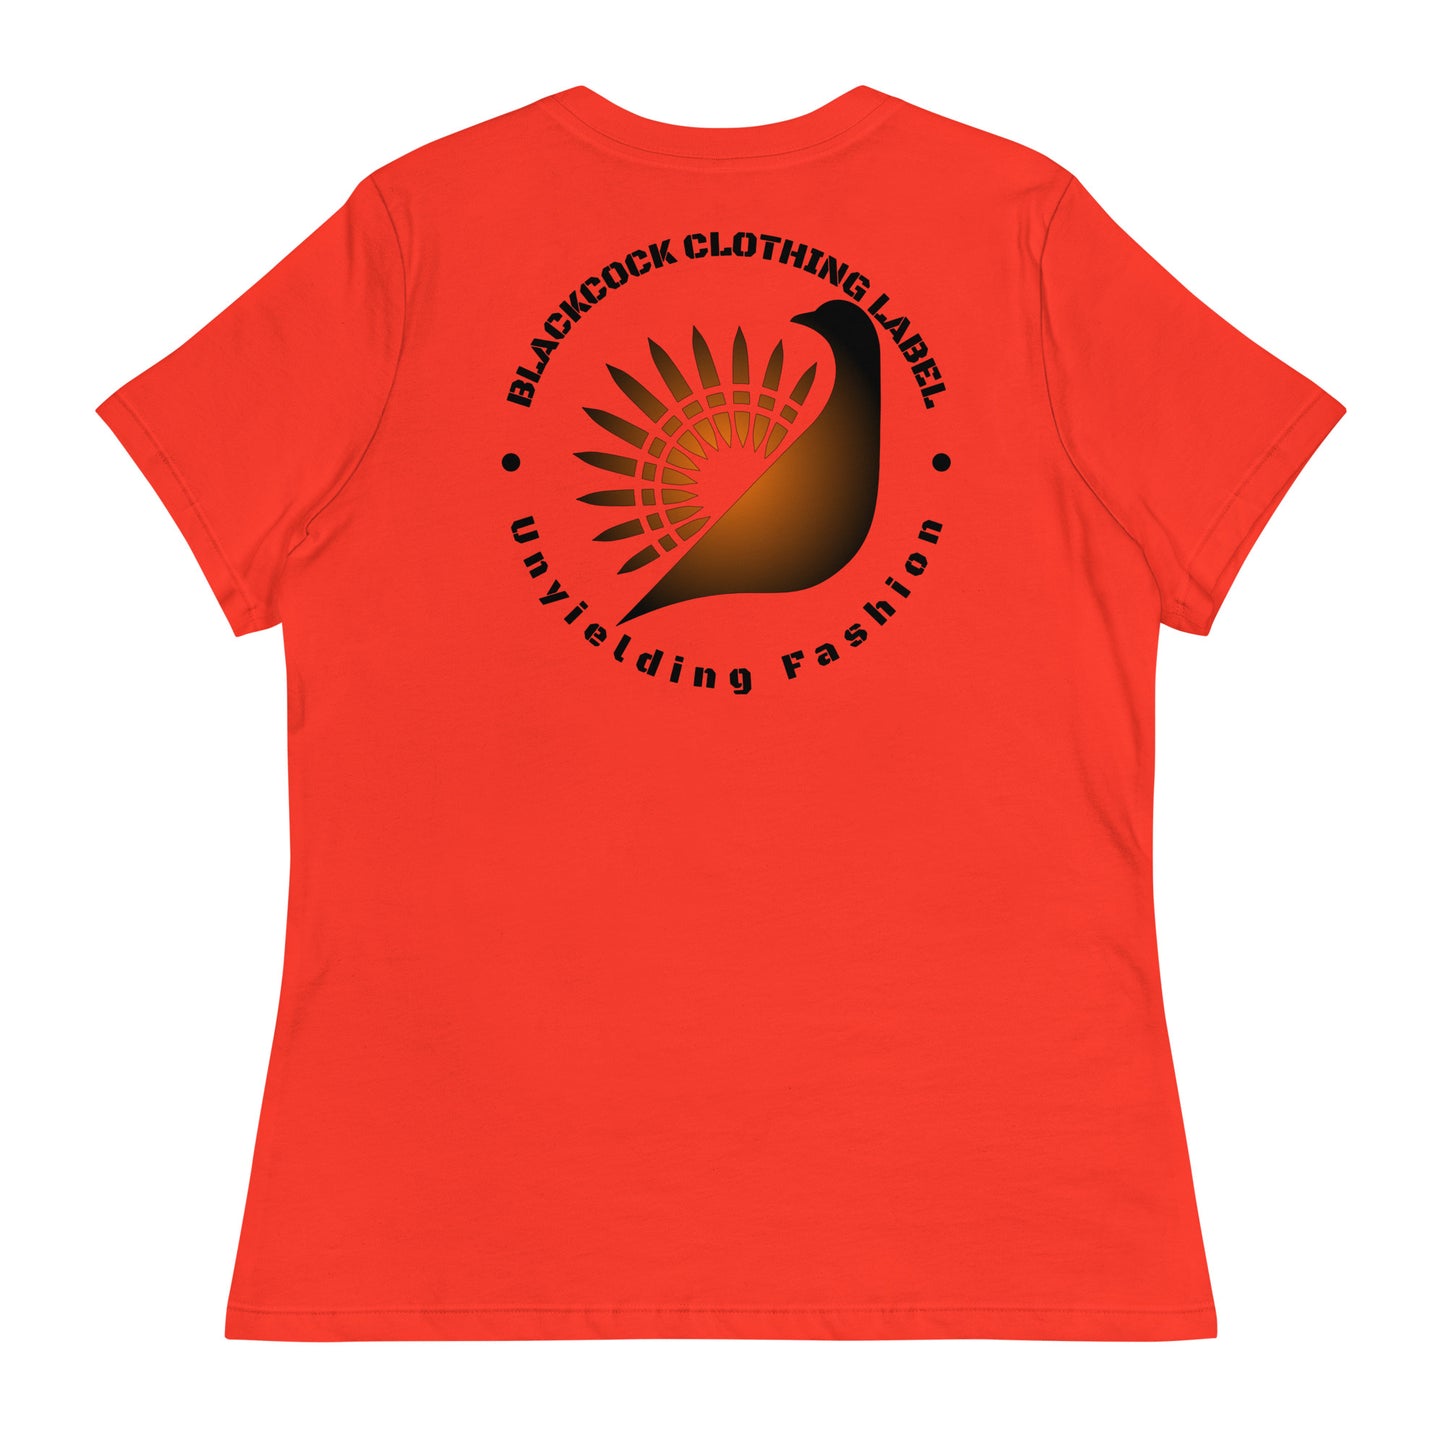 Pretty Pumpkin Women's Relaxed T-Shirt